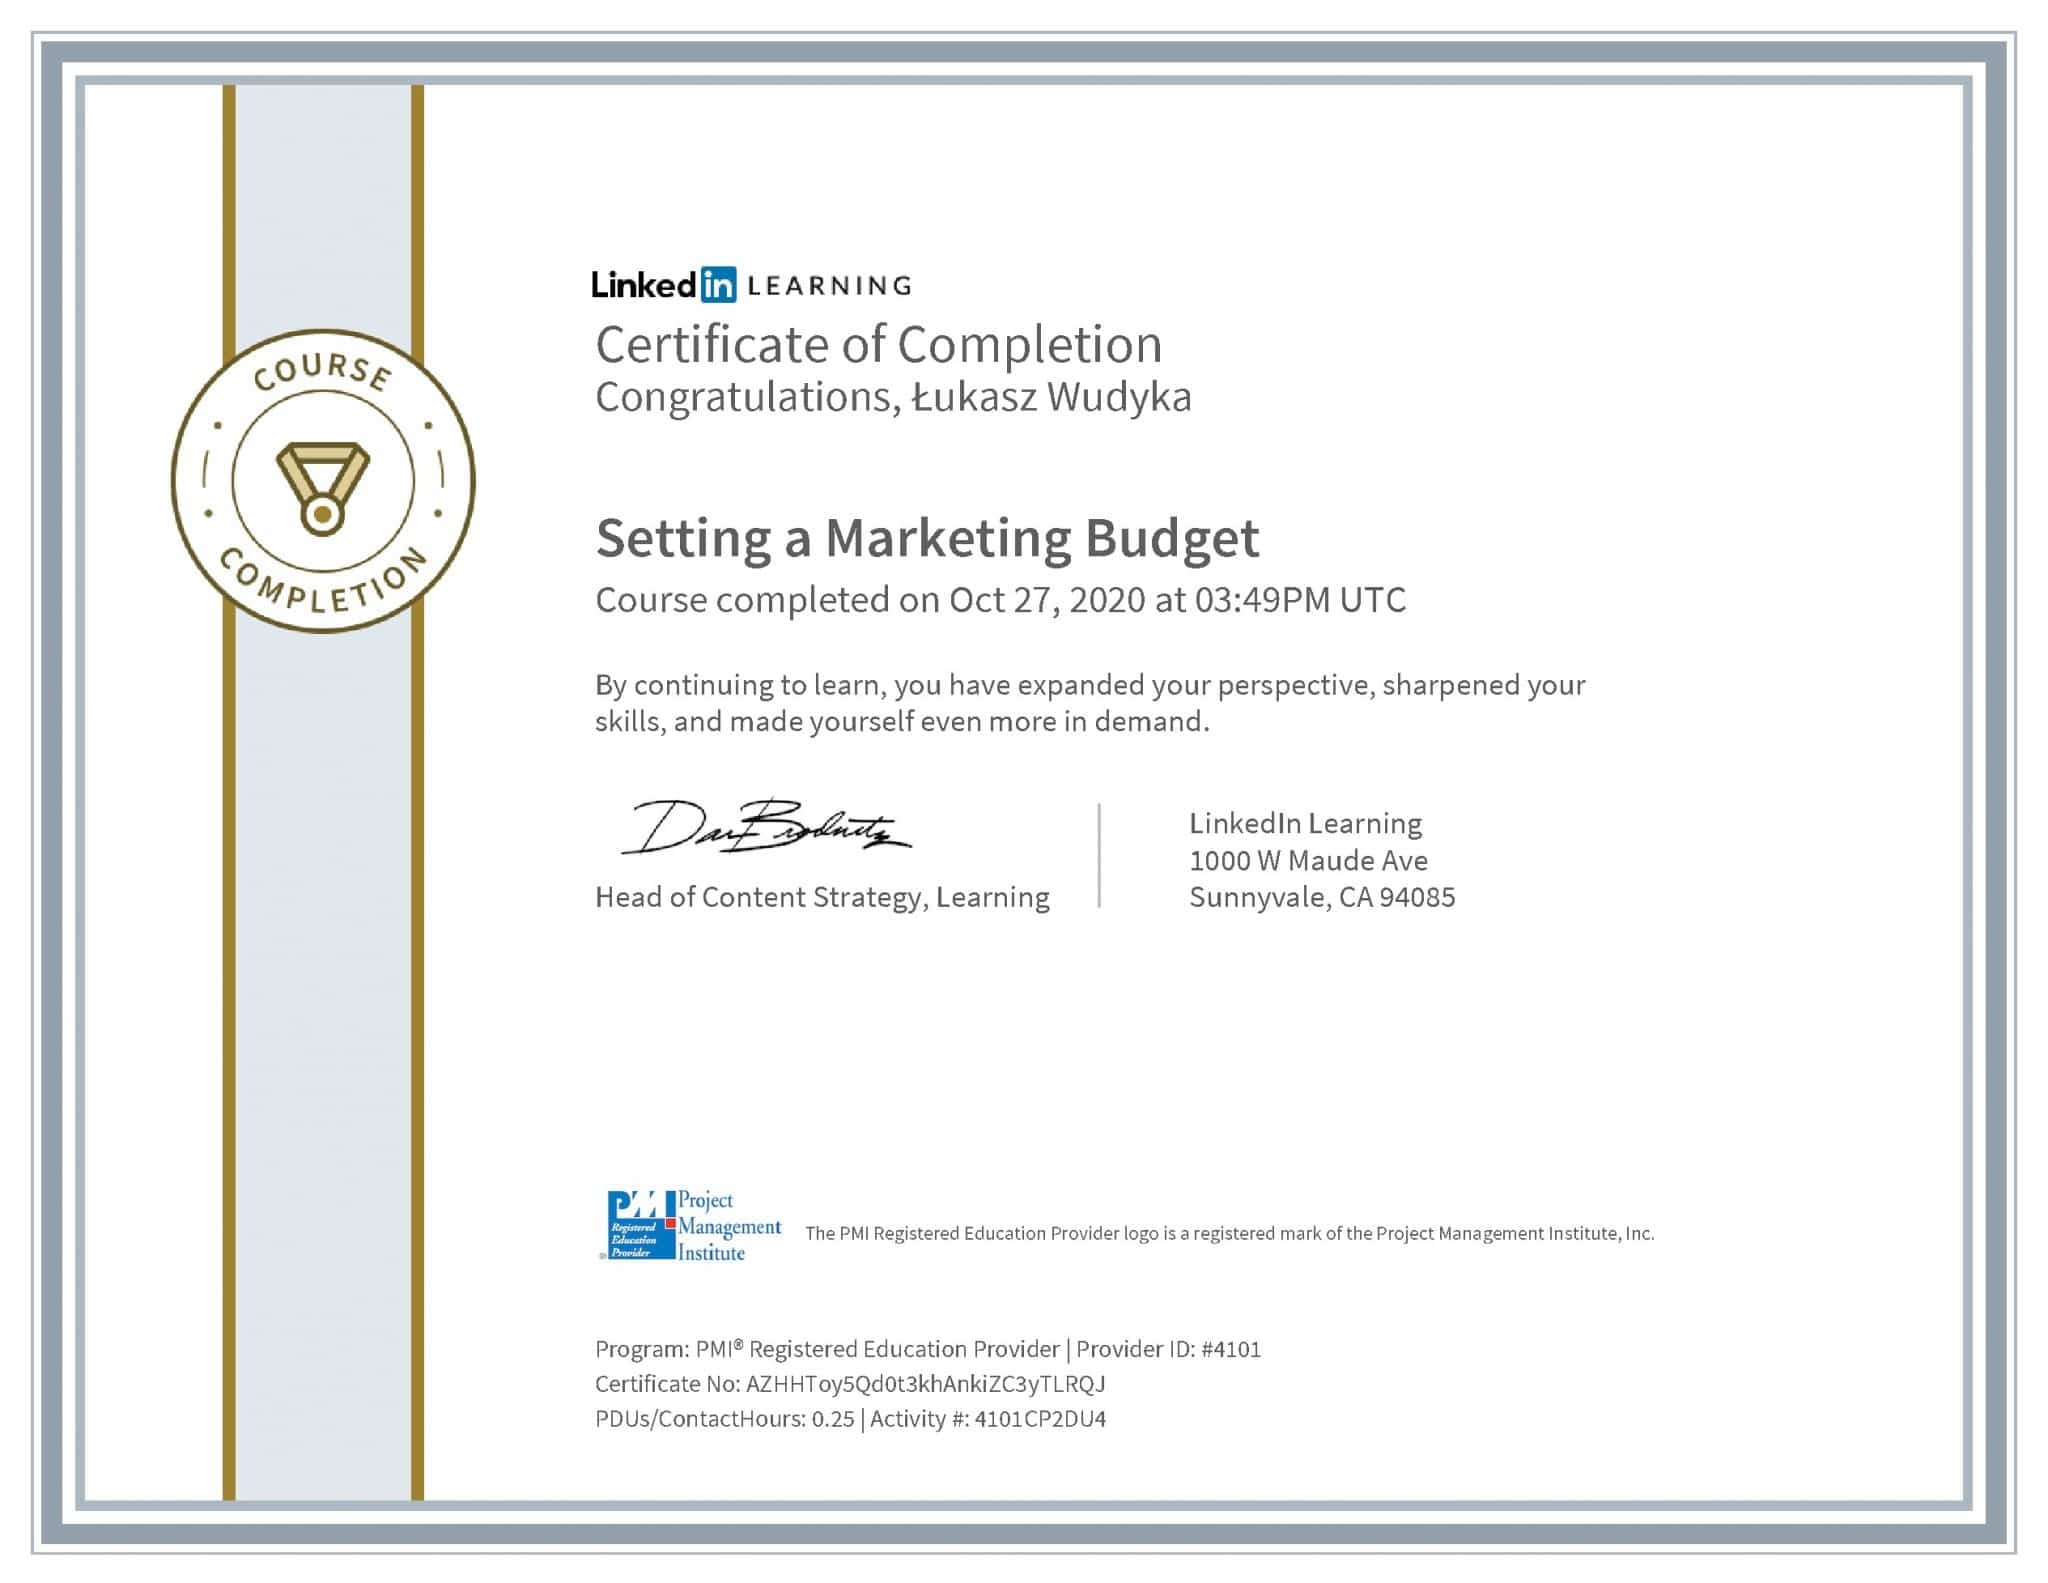 Łukasz Wudyka certyfikat LinkedIn Setting a Marketing Budget PMI